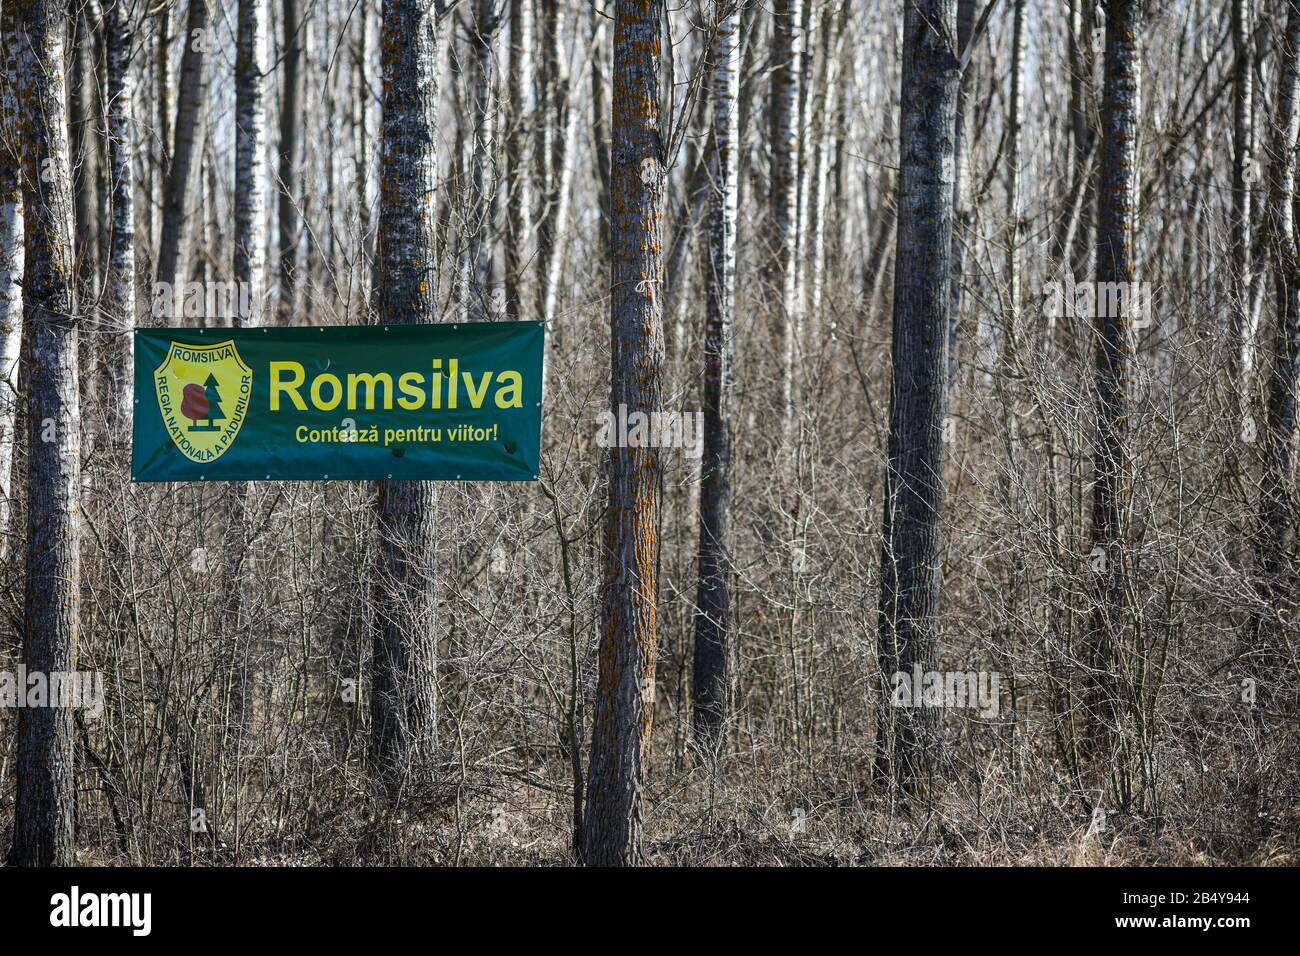 Uliesti, Rumänien - 06. März 2020: Romsilva-Logo in einem Wald (rumänisches Staatsunternehmen, das für den Schutz der Wälder zuständig ist) Stockfoto